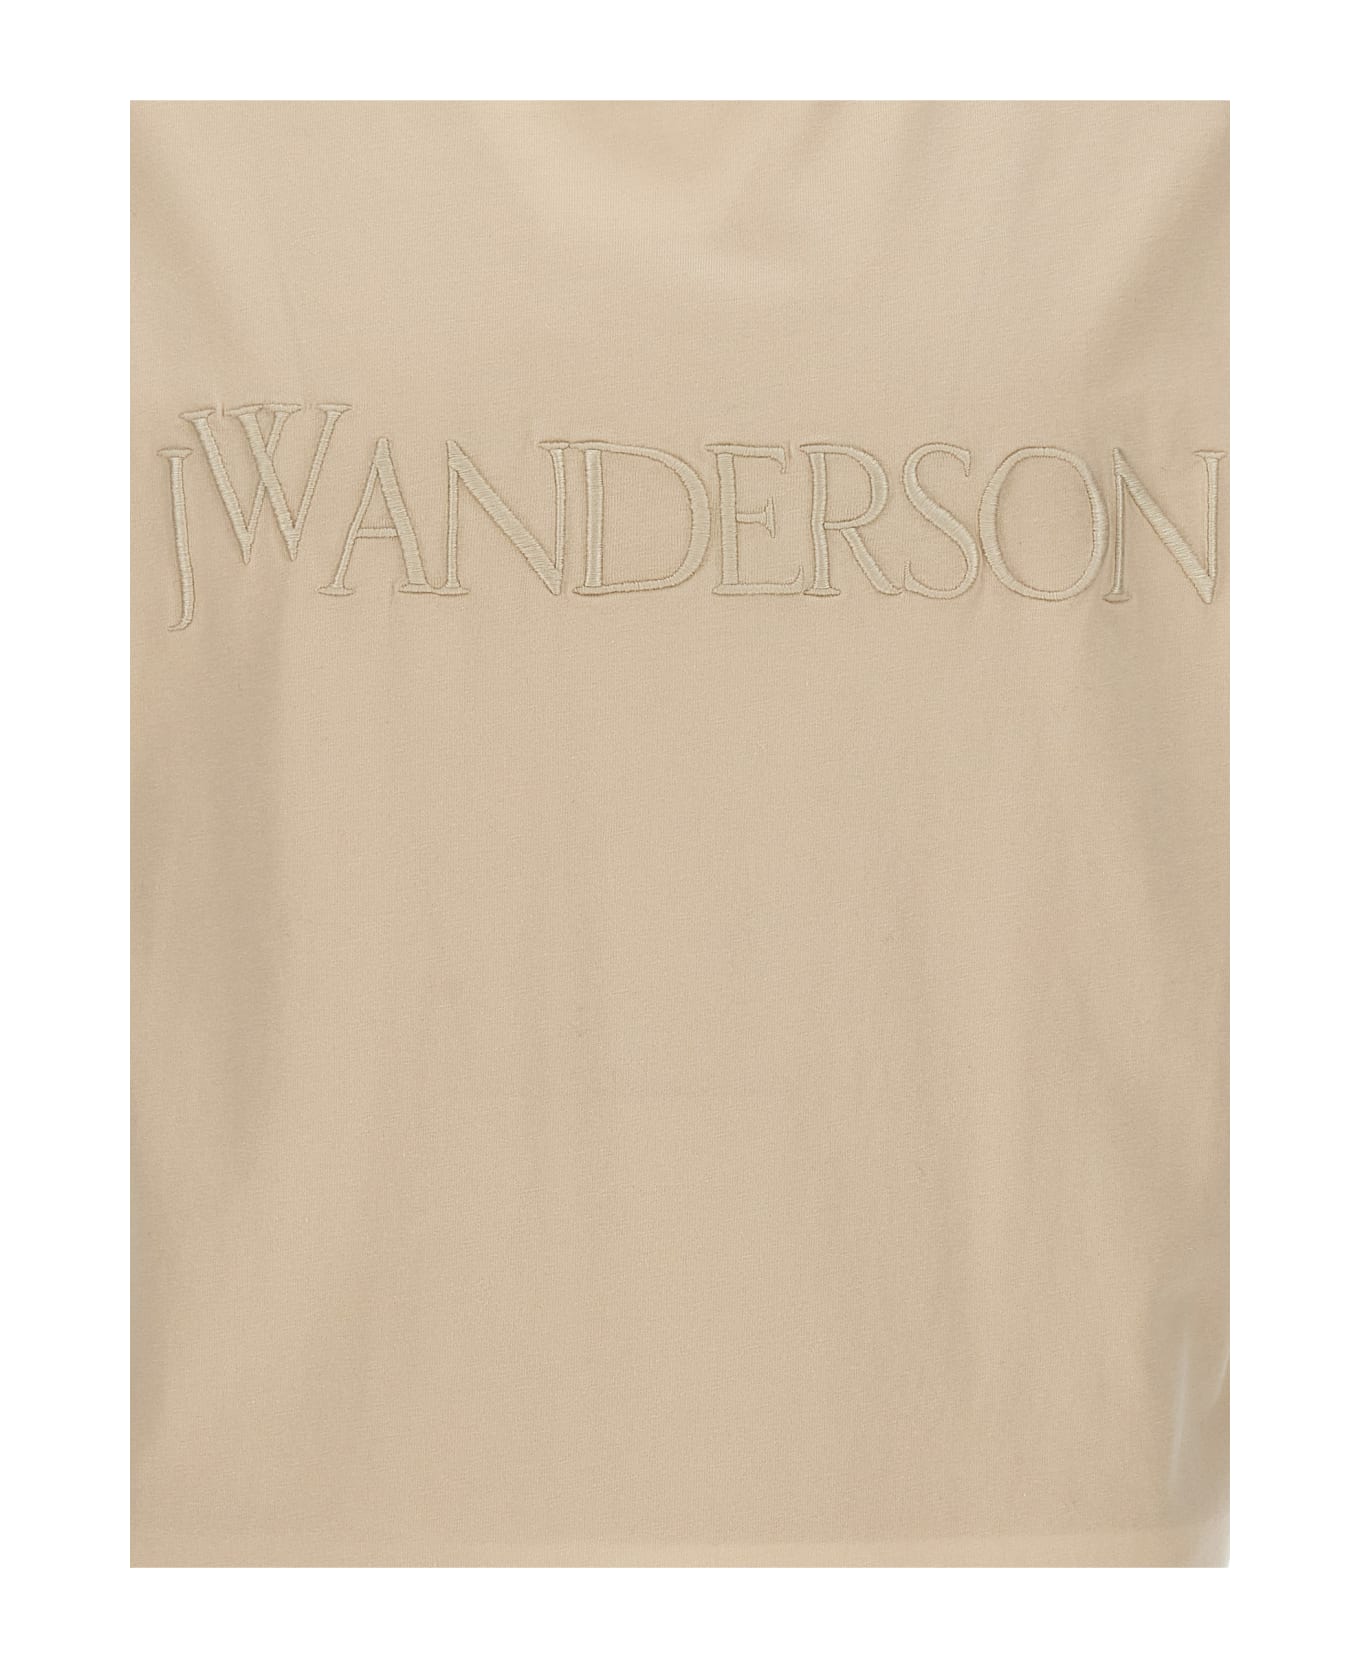 J.W. Anderson Logo T-shirt - Beige